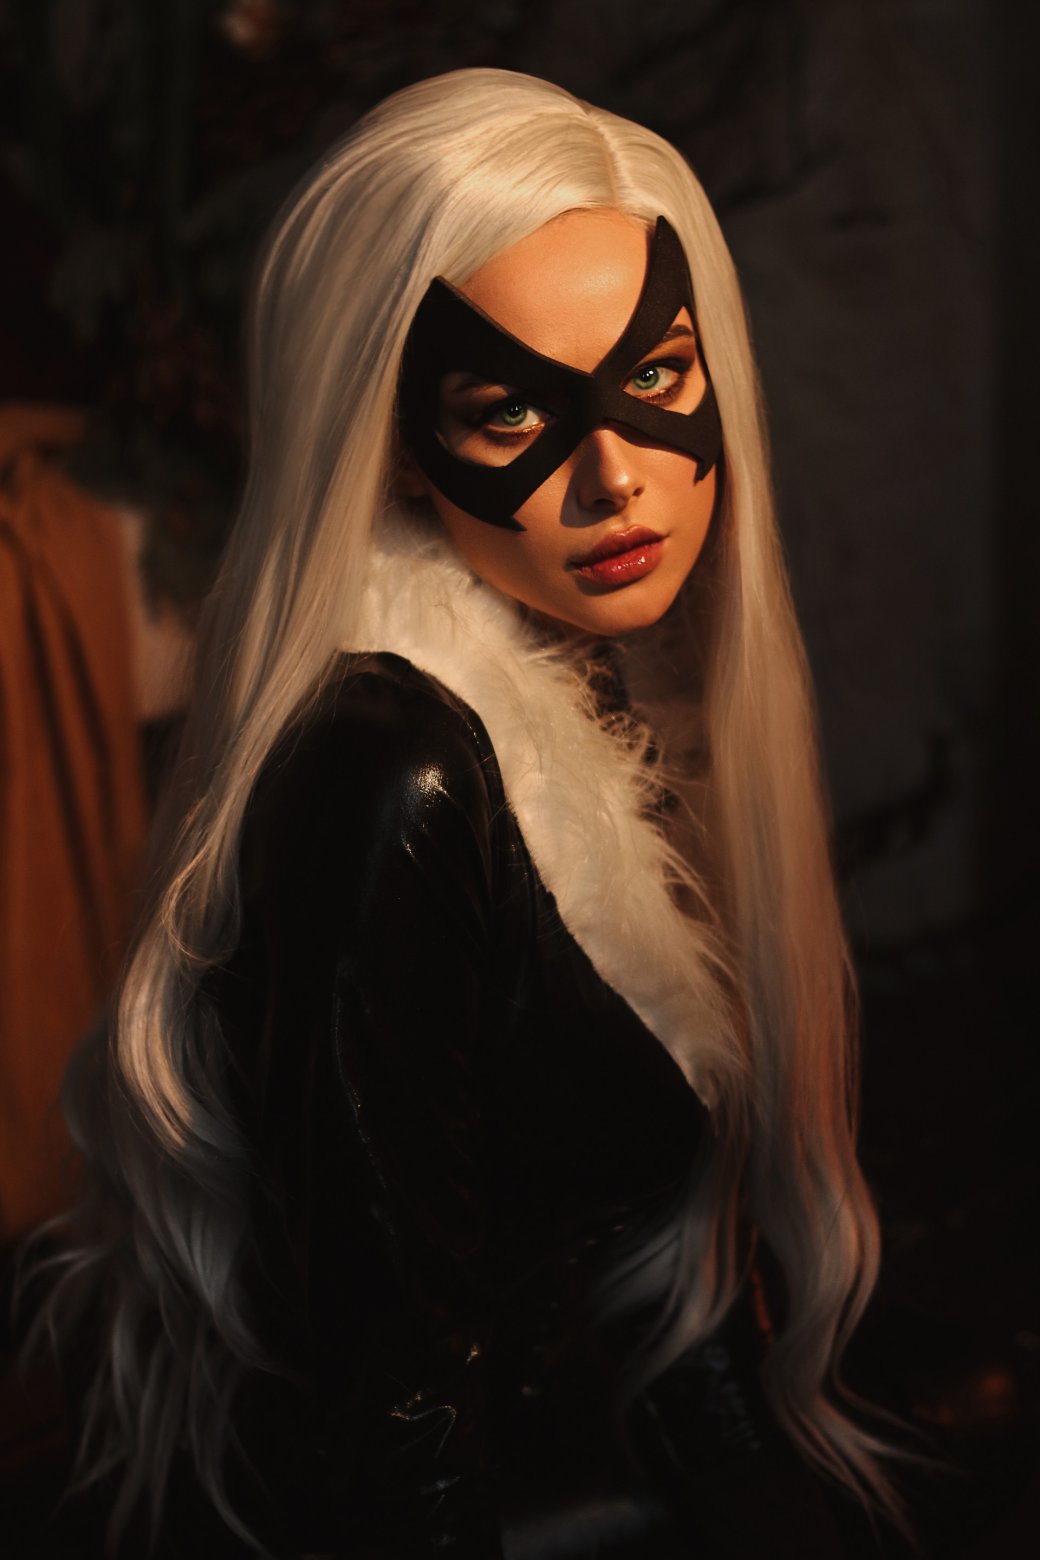 Галерея Белоруска показала горячий косплей Чёрной кошки из комиксов Marvel - 8 фото